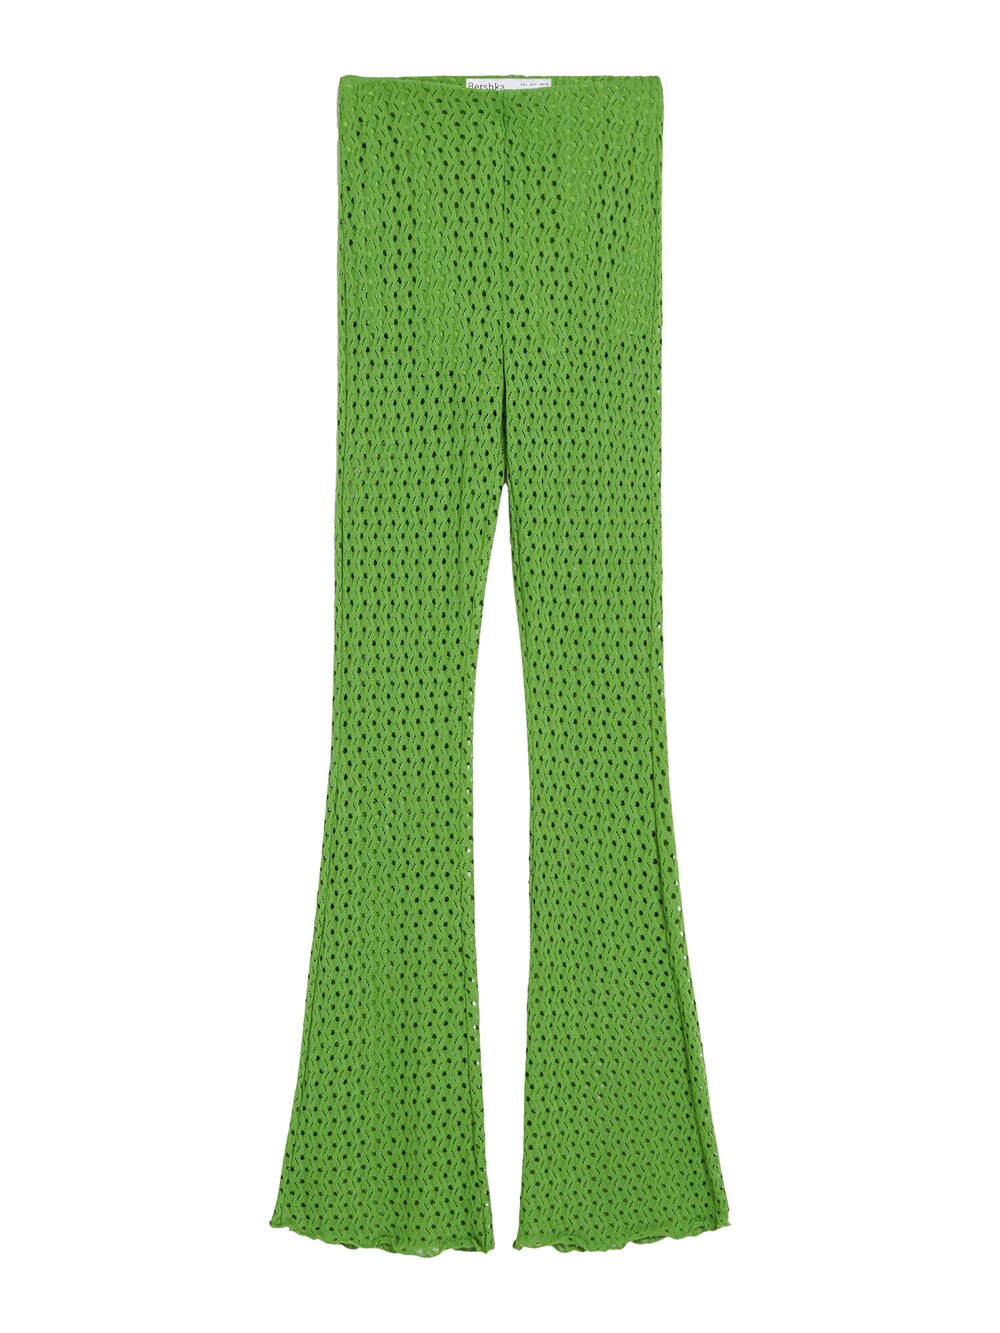 Расклешенные брюки Bershka, зеленый расклешенные брюки zara насыщенный зеленый